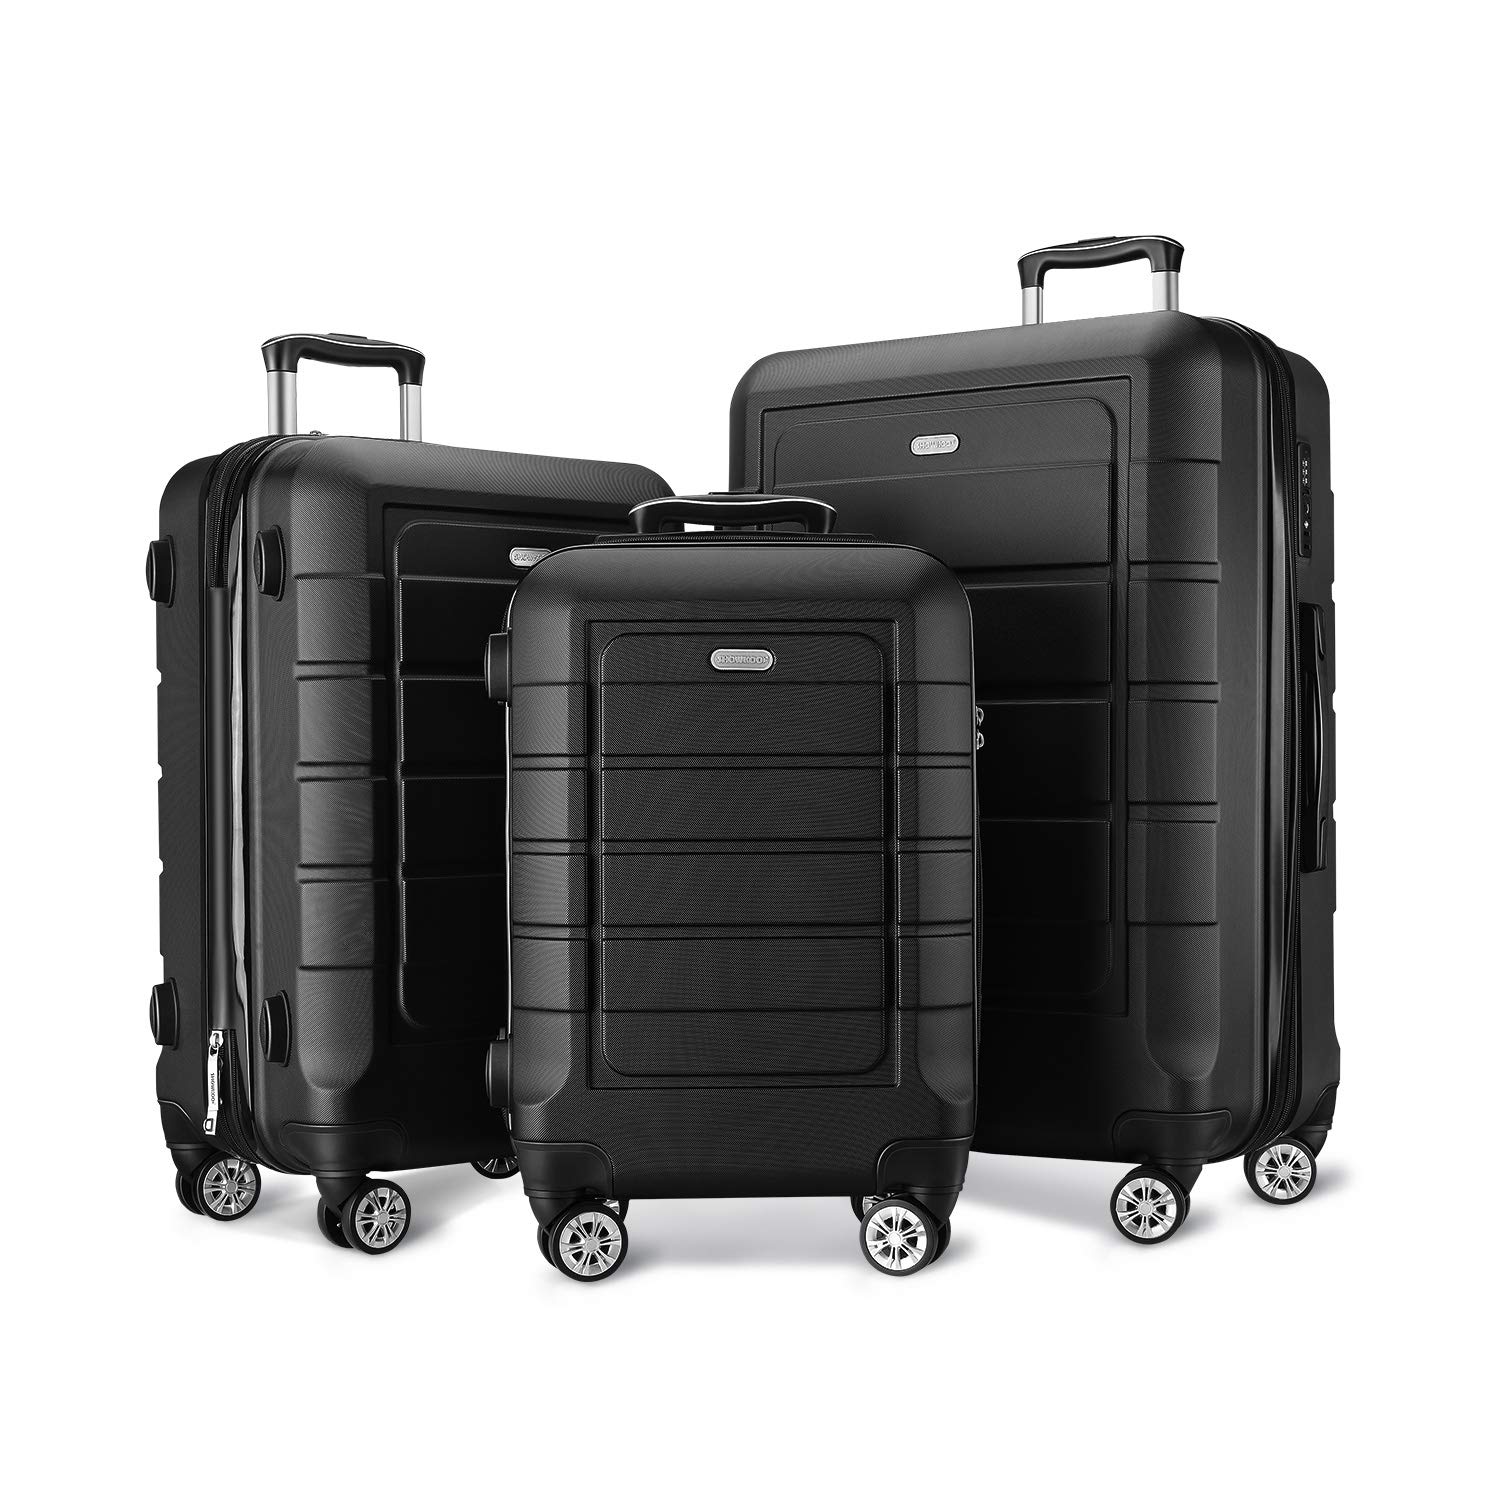 SHOWKOO Full Zip Hardshell Luggage Set, 3-Piece